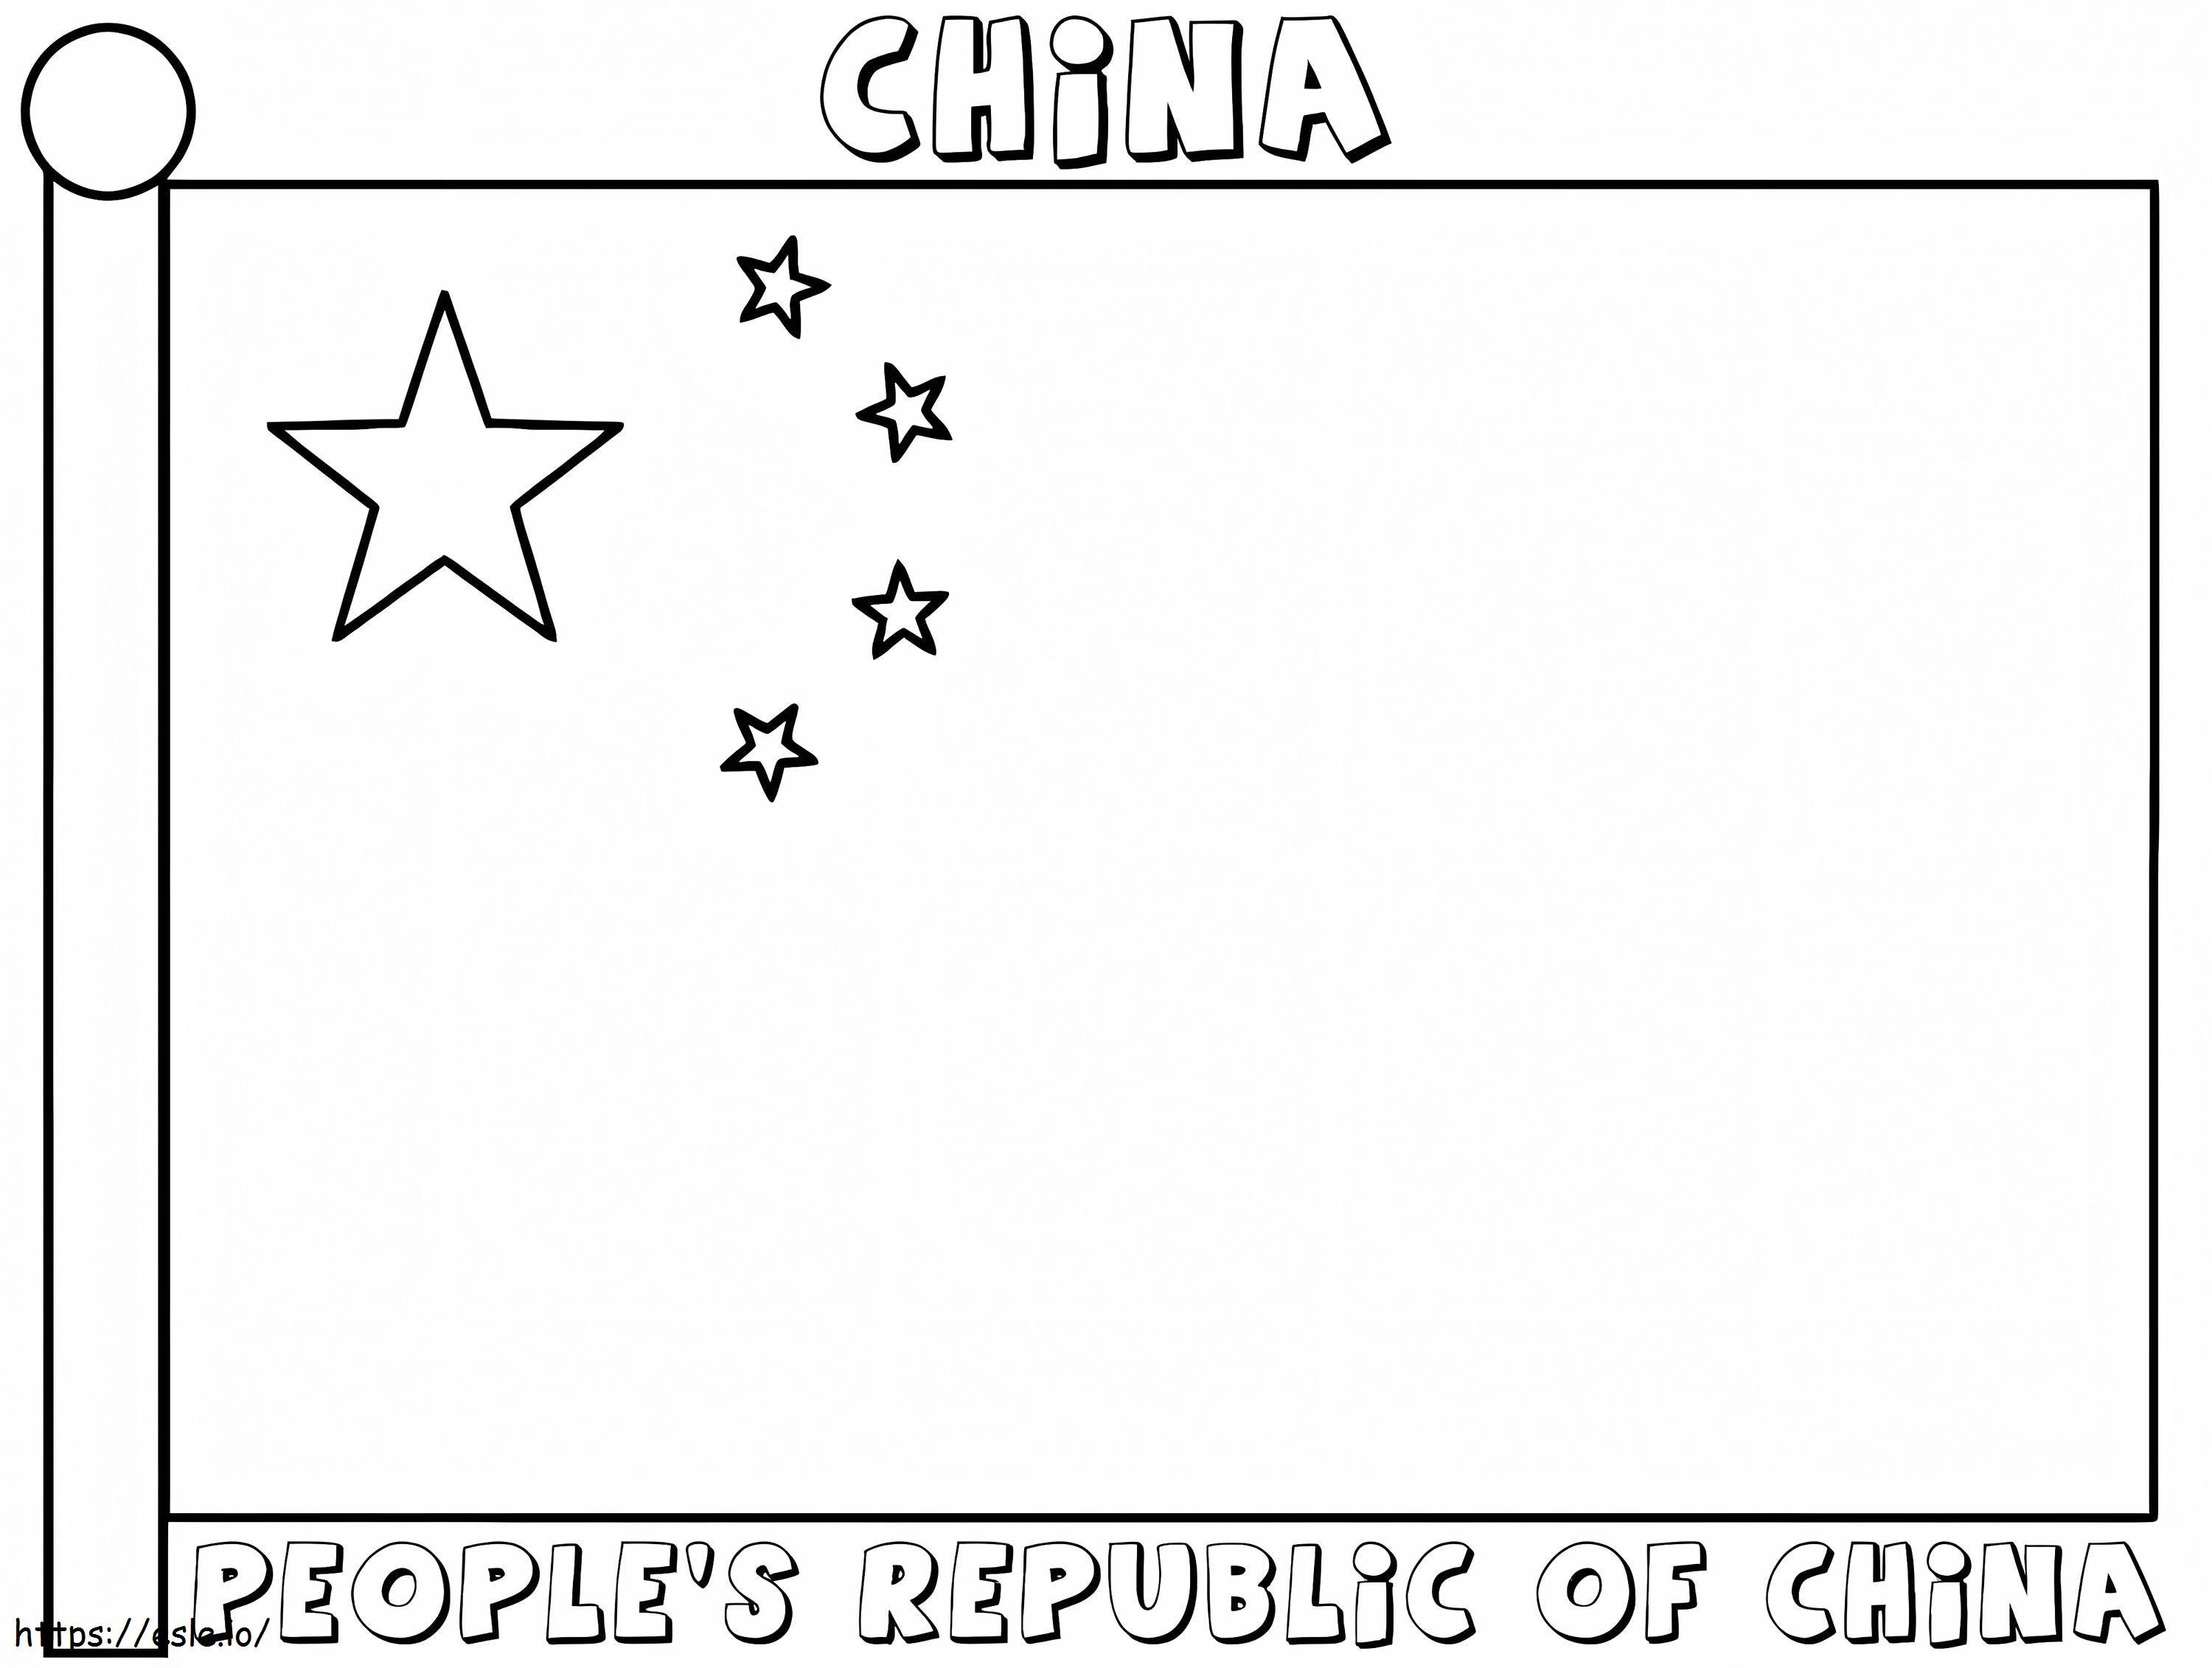 Bandeira da China 2 para colorir